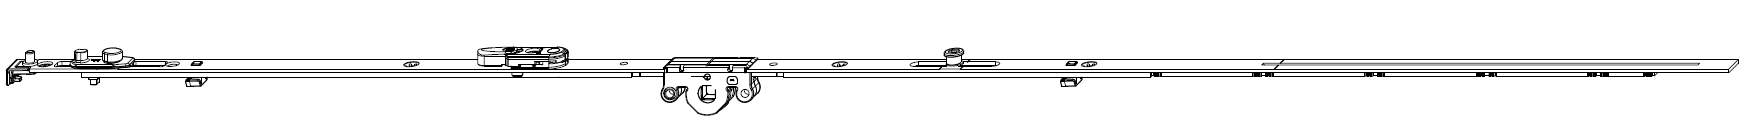 MAICO -  Cremonese MULTI-MATIC anta ribalta antieffrazione altezza maniglia fissa con piedino e dss per ribalta e bilanciere - gr / dim. 2450 - entrata 15 - alt. man. 1050 - lbb/hbb 2201 - 2450